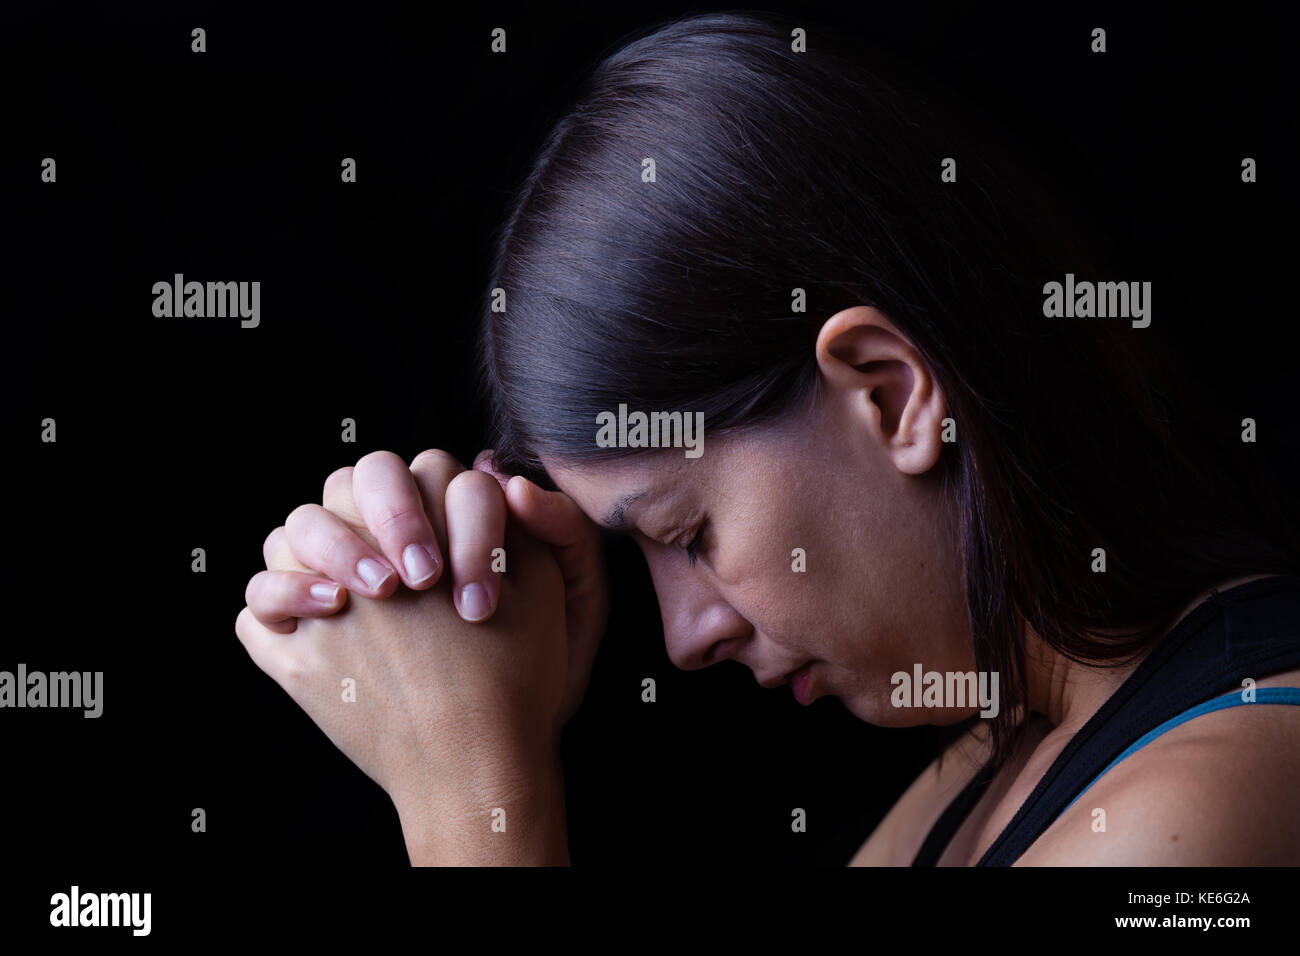 Treue Frau beten, Hände in der Anbetung zu Gott gefaltet, Kopf nach unten, die Augen geschlossen, in religiöser Inbrunst. schwarzer Hintergrund Gebet treu Hände gefaltet Stockfoto